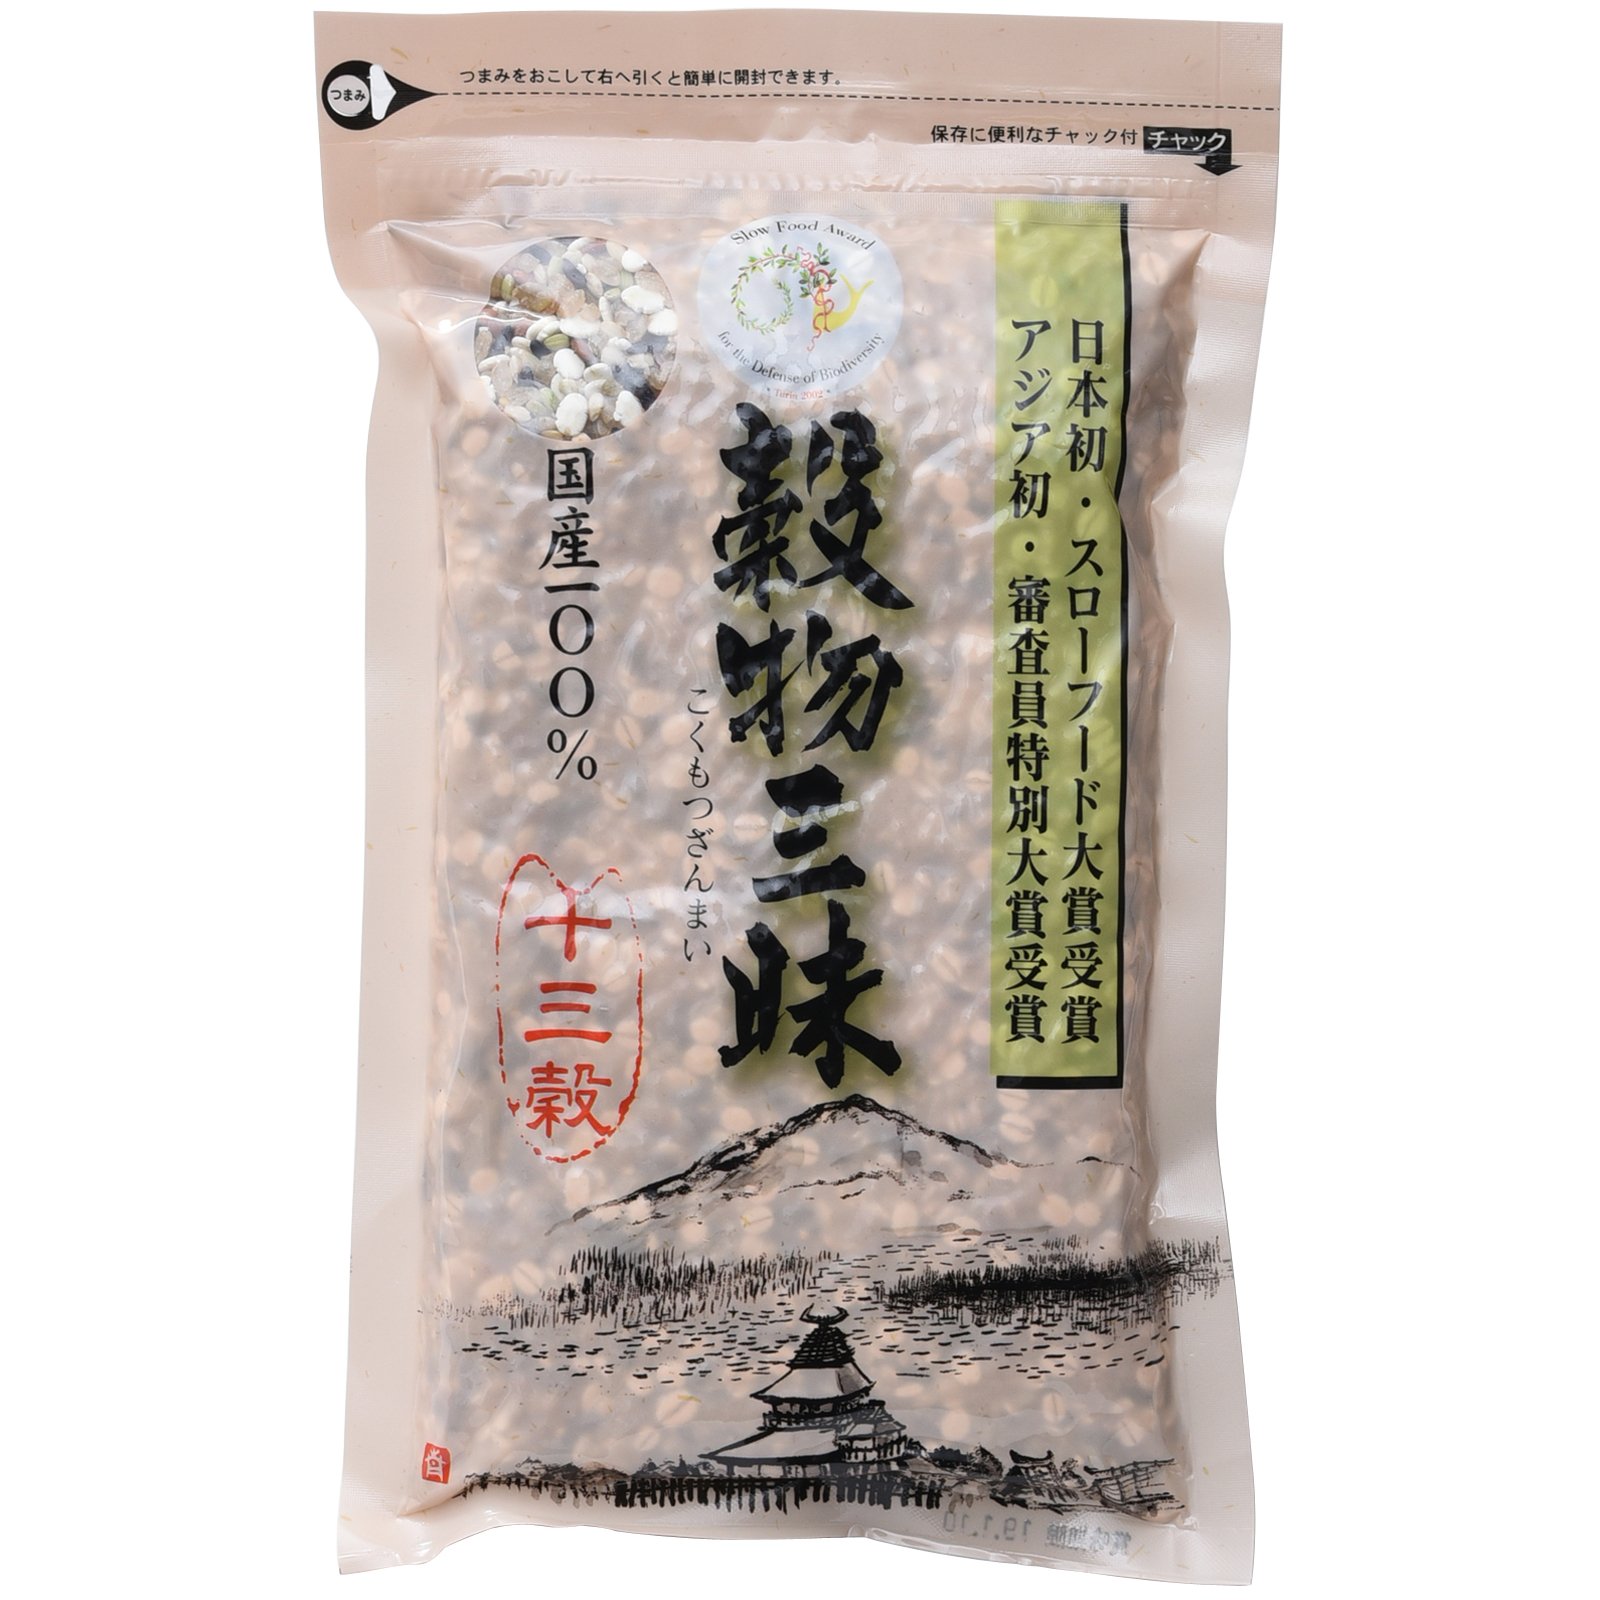 葦農 穀物三昧 500g ×1袋の商品画像